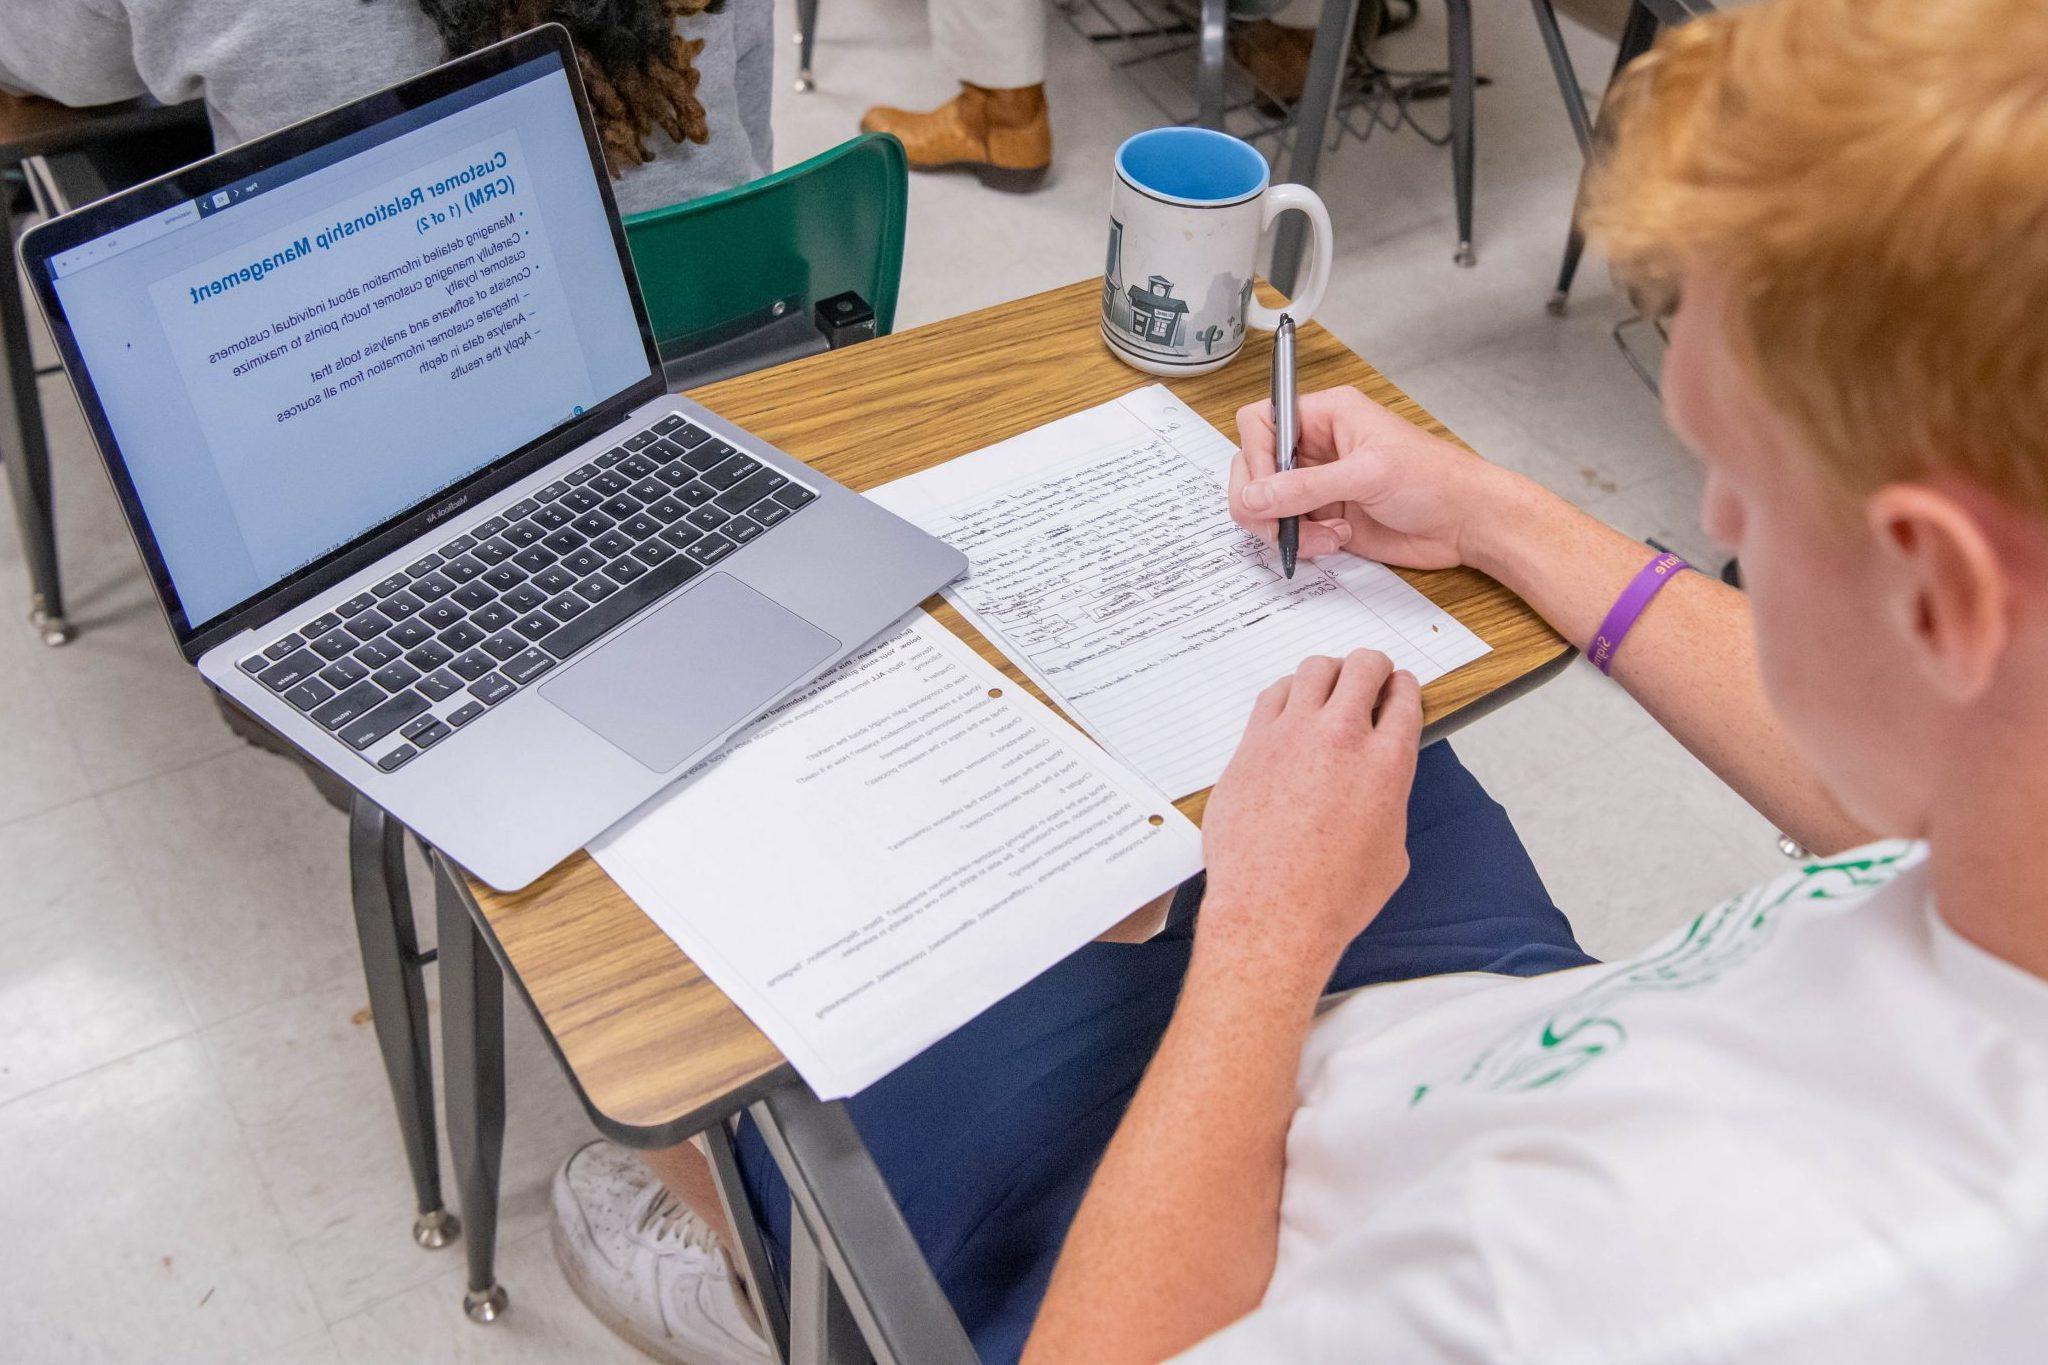 坐在教室课桌前的学生, taking notes on paper, 看着笔记本电脑上打开的ppt.